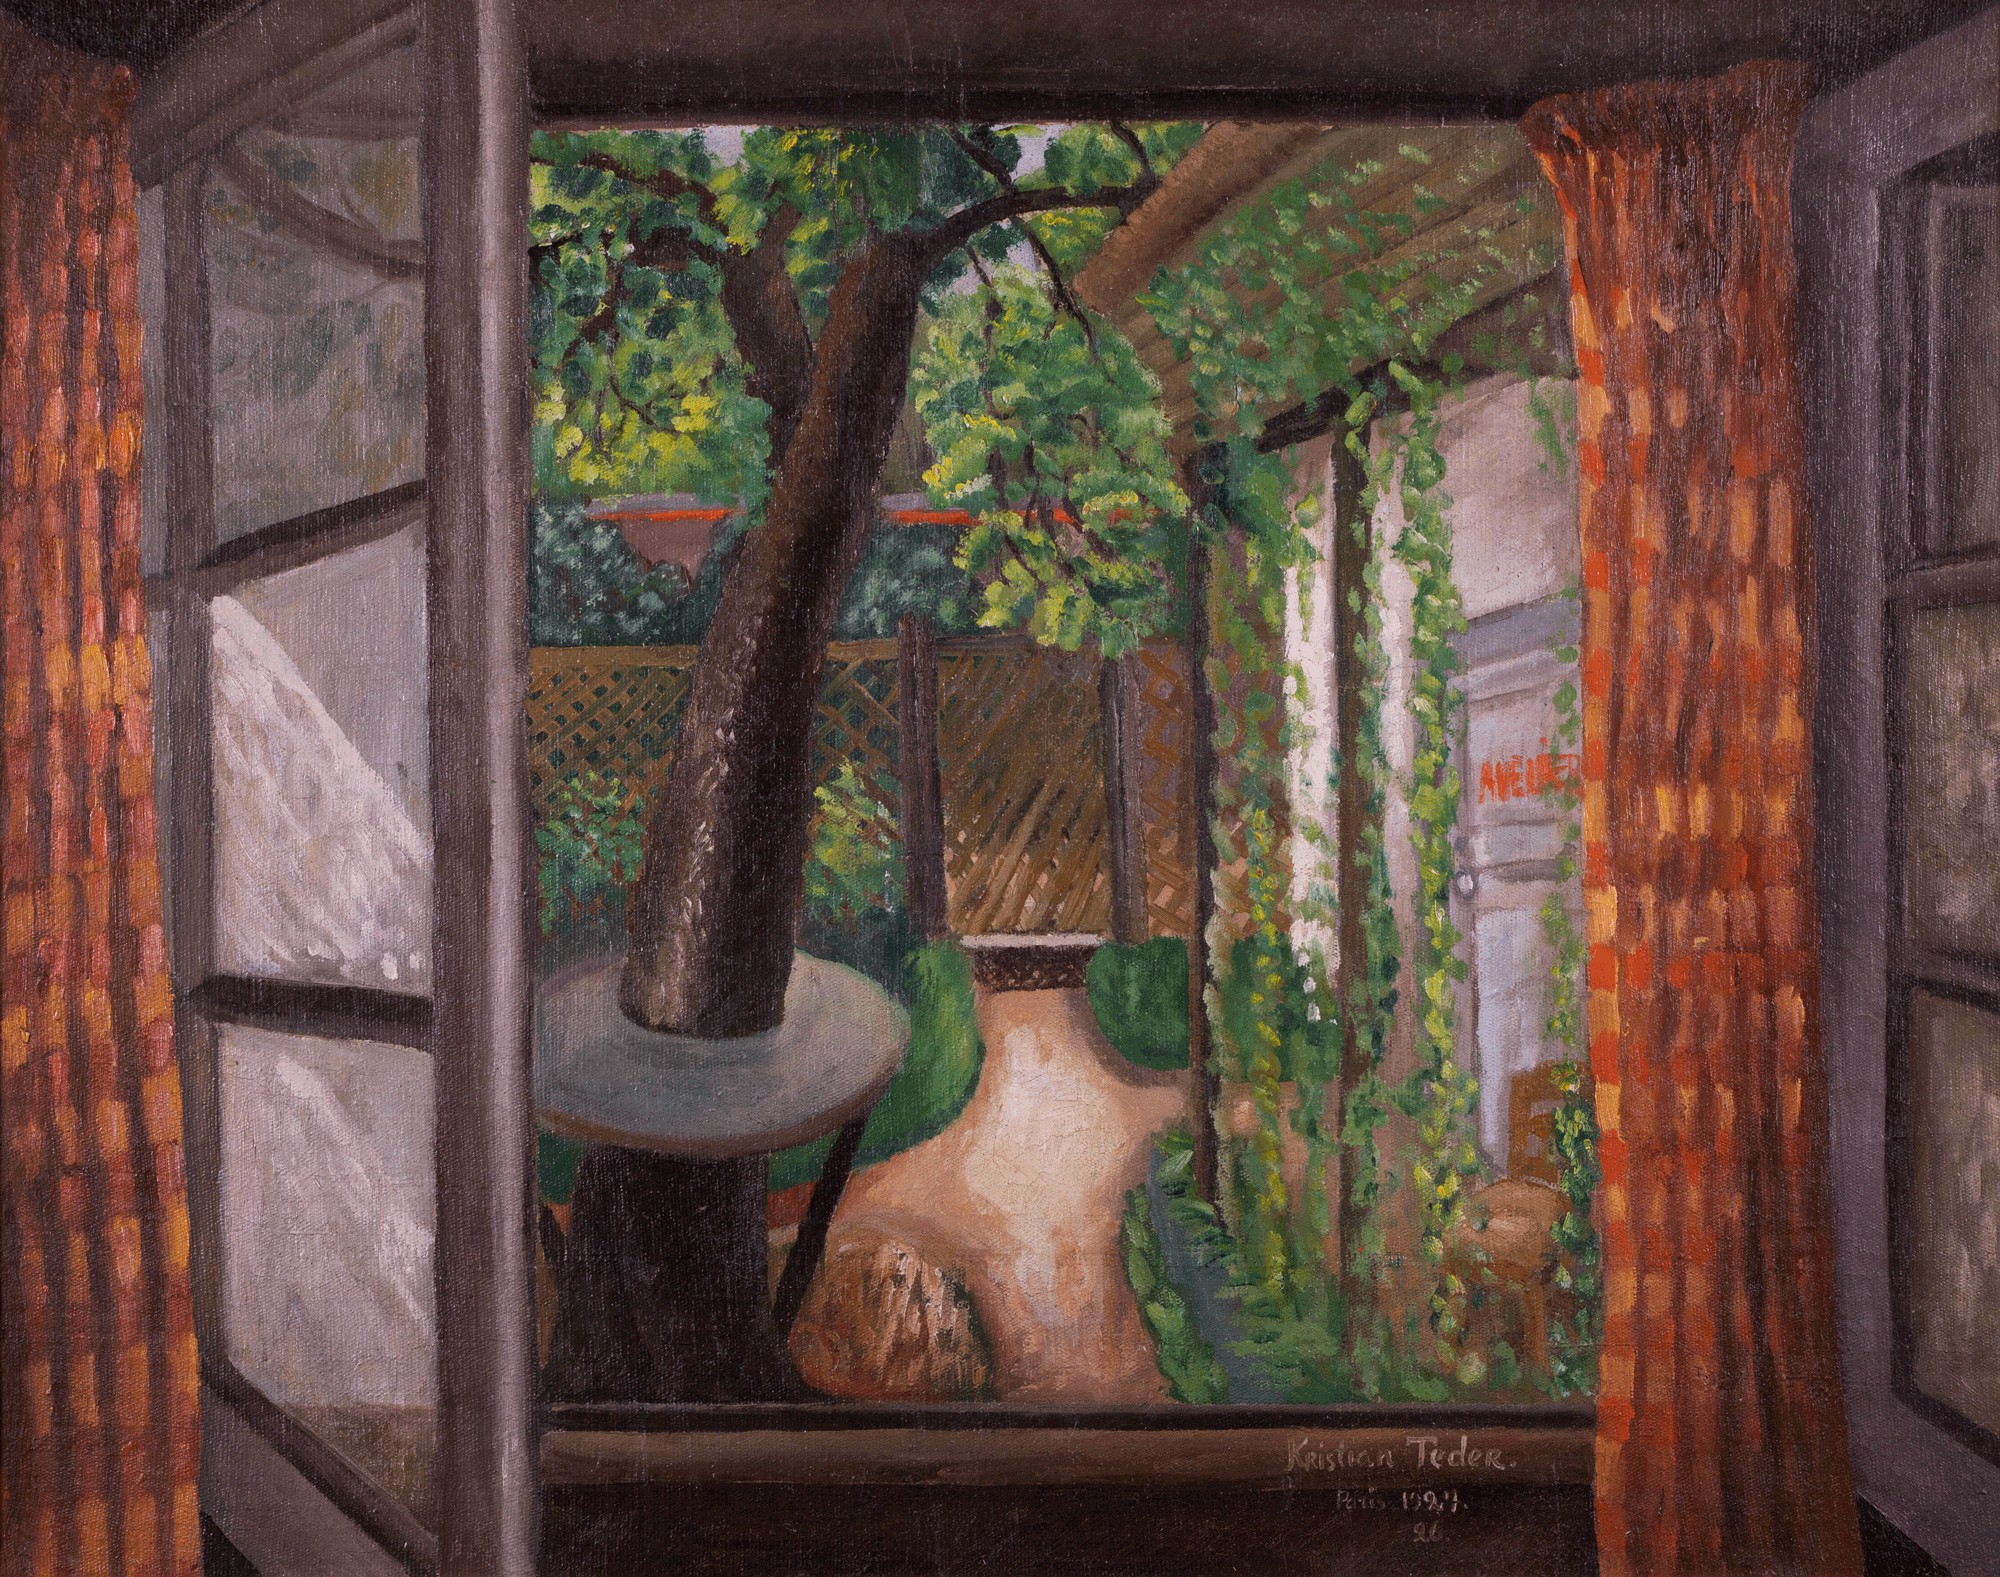 Kristjan Teder "Open Window"